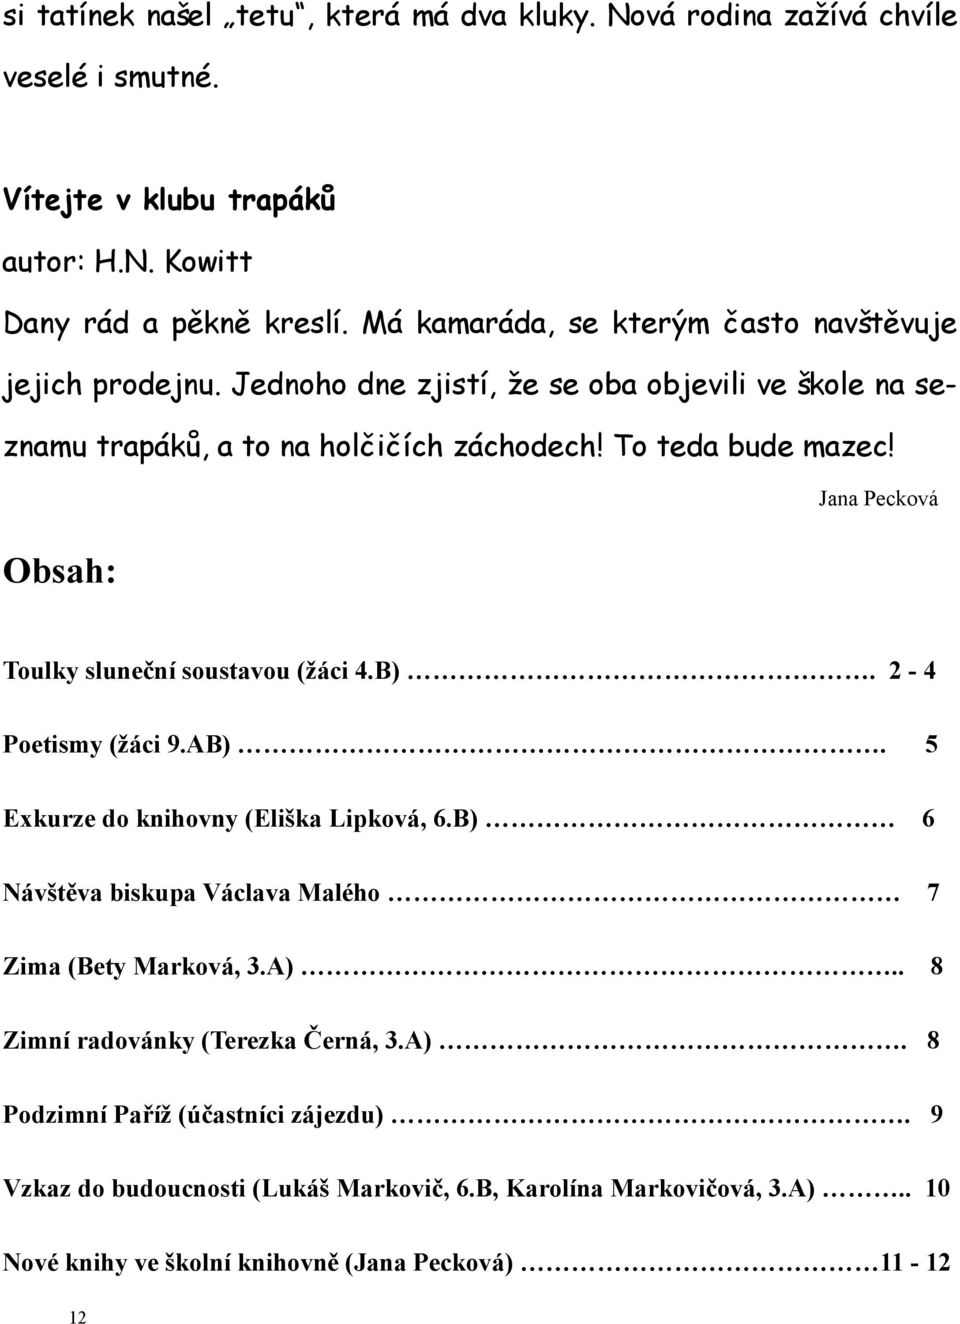 Obsah: Jana Pecková Toulky sluneční soustavou (žáci 4.B). 2-4 Poetismy (žáci 9.AB). 5 Exkurze do knihovny (Eliška Lipková, 6.